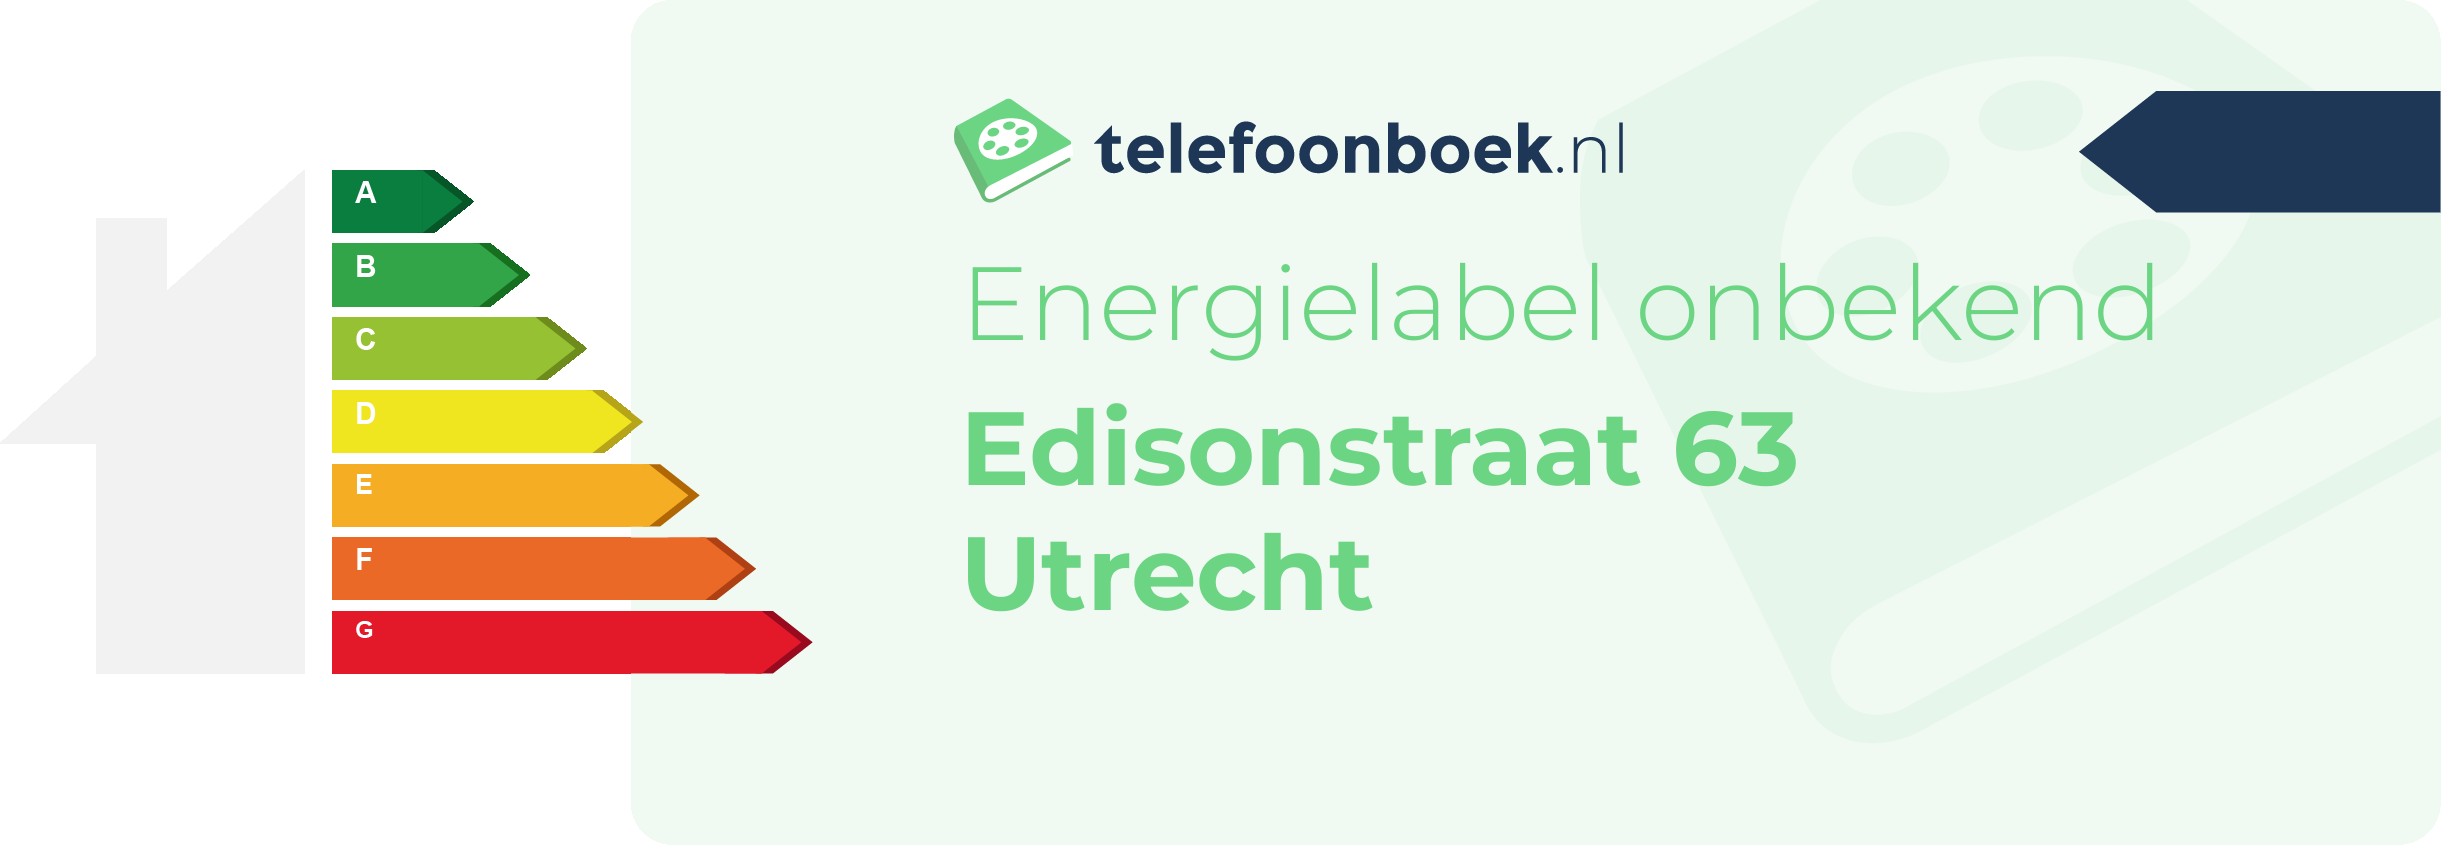 Energielabel Edisonstraat 63 Utrecht